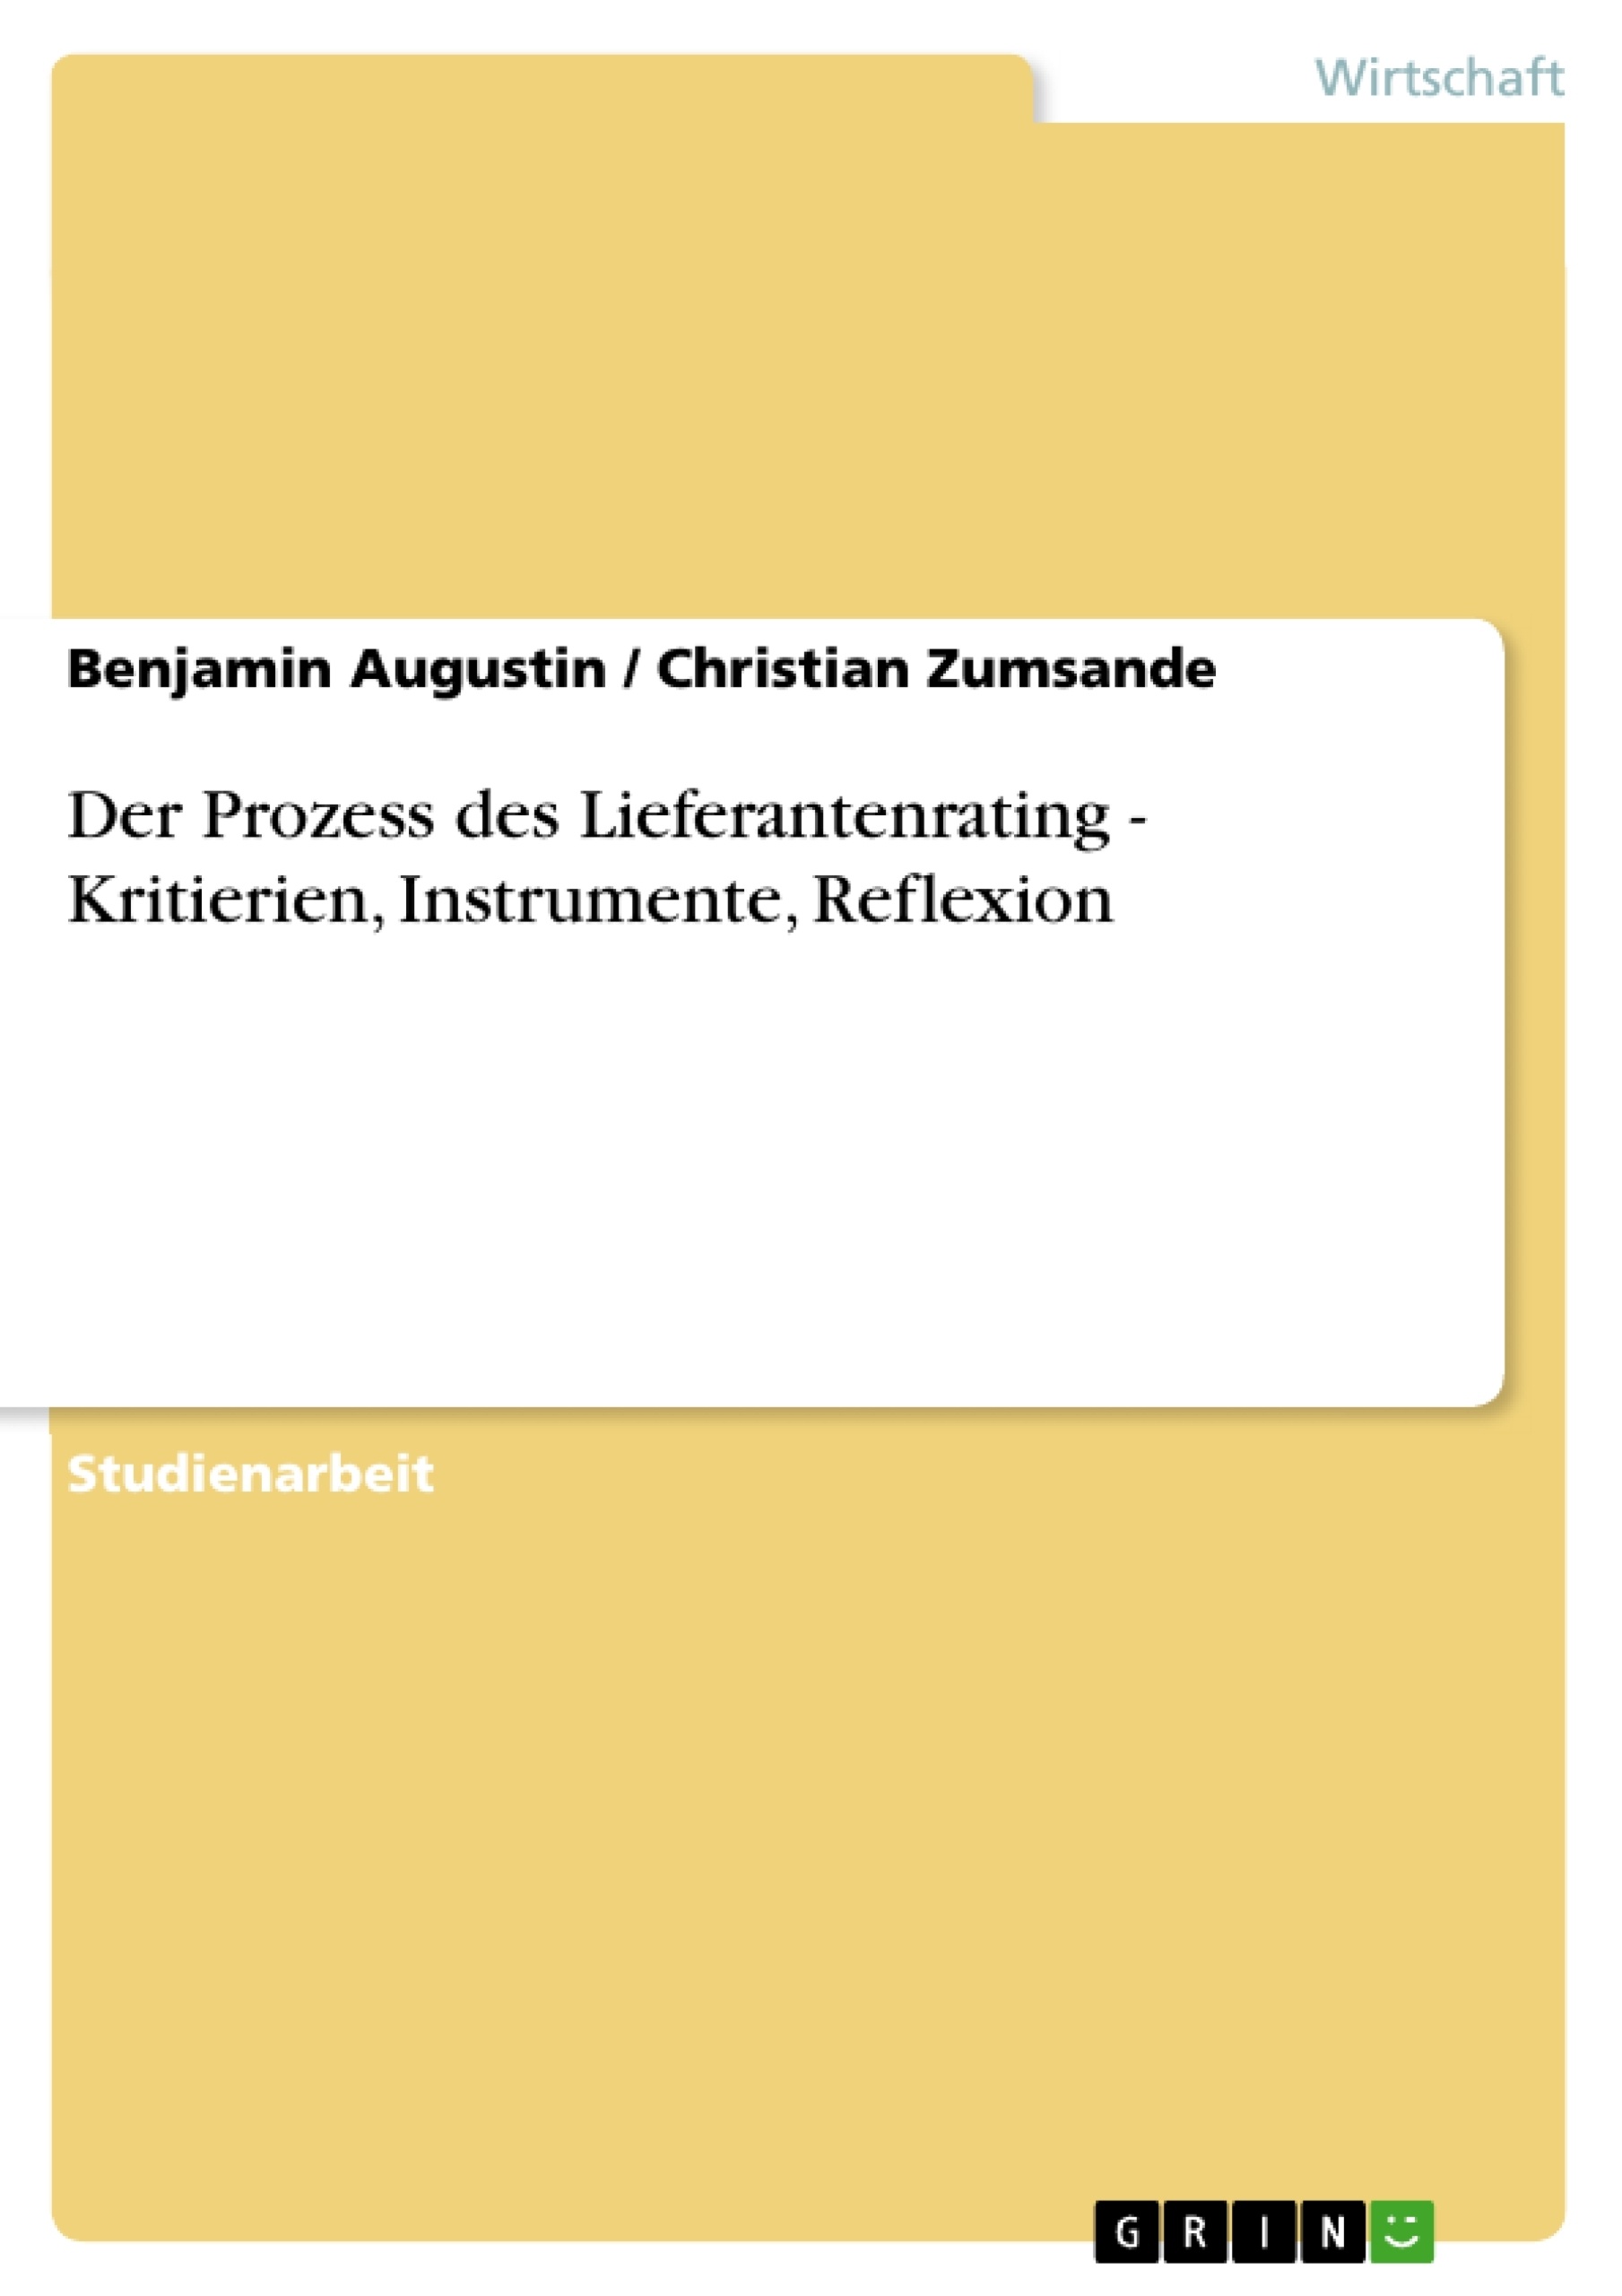 Título: Der Prozess des Lieferantenrating - Kritierien, Instrumente, Reflexion